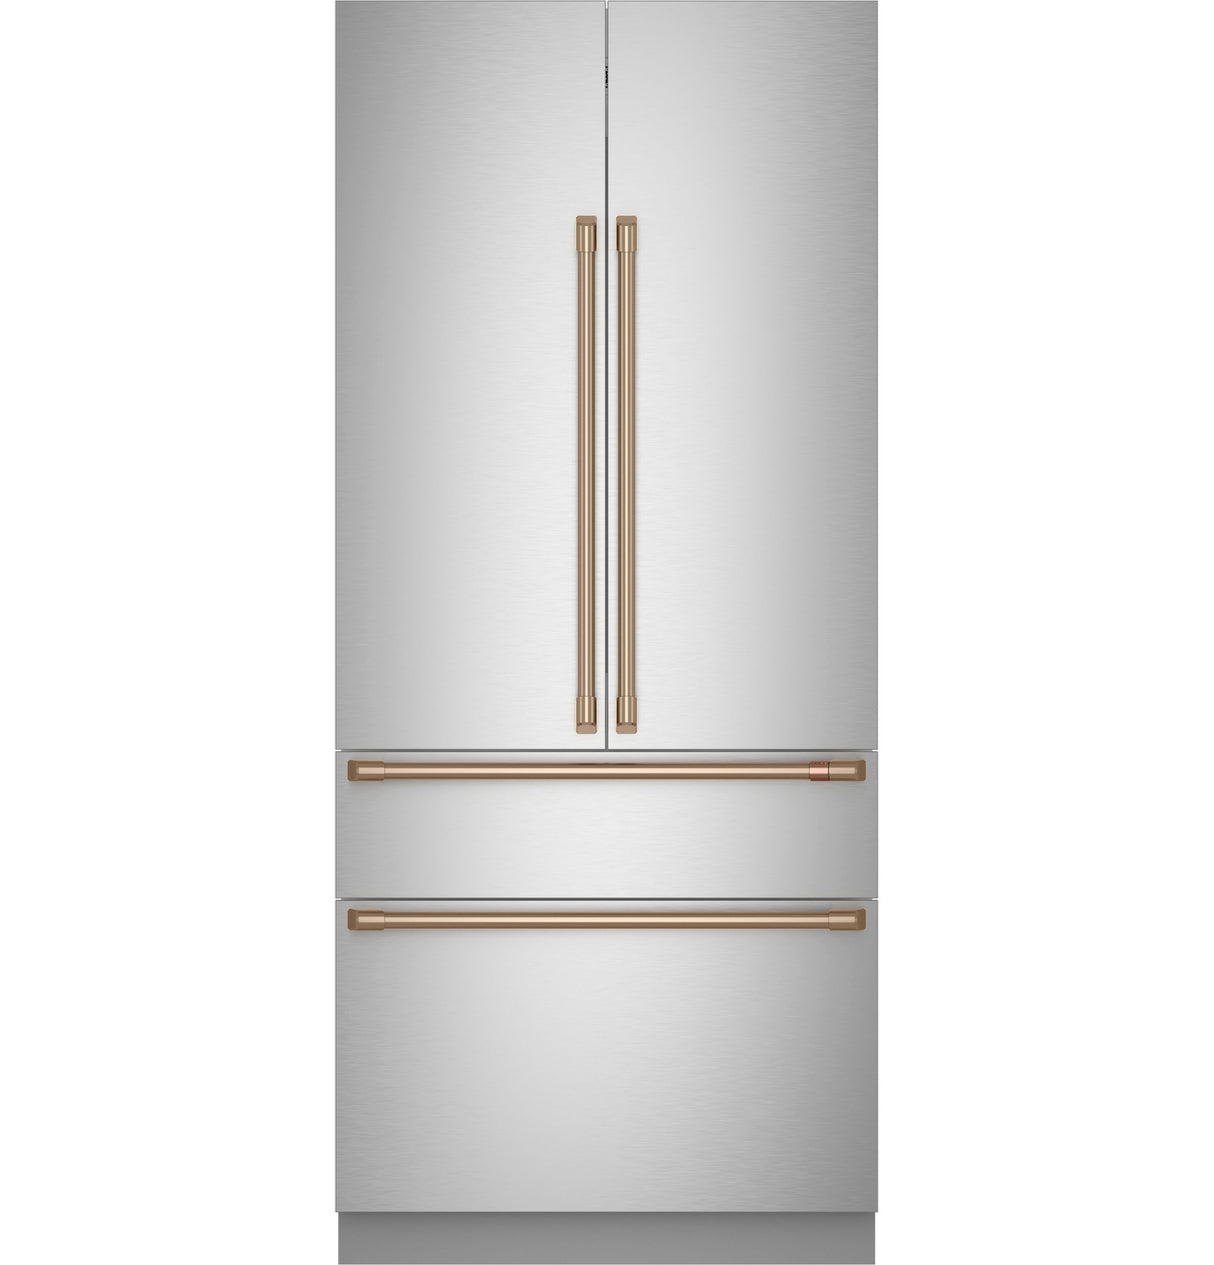 Caf(eback)(TM) 36" Integrated French-Door Refrigerator - (CIP36NP2VS1)